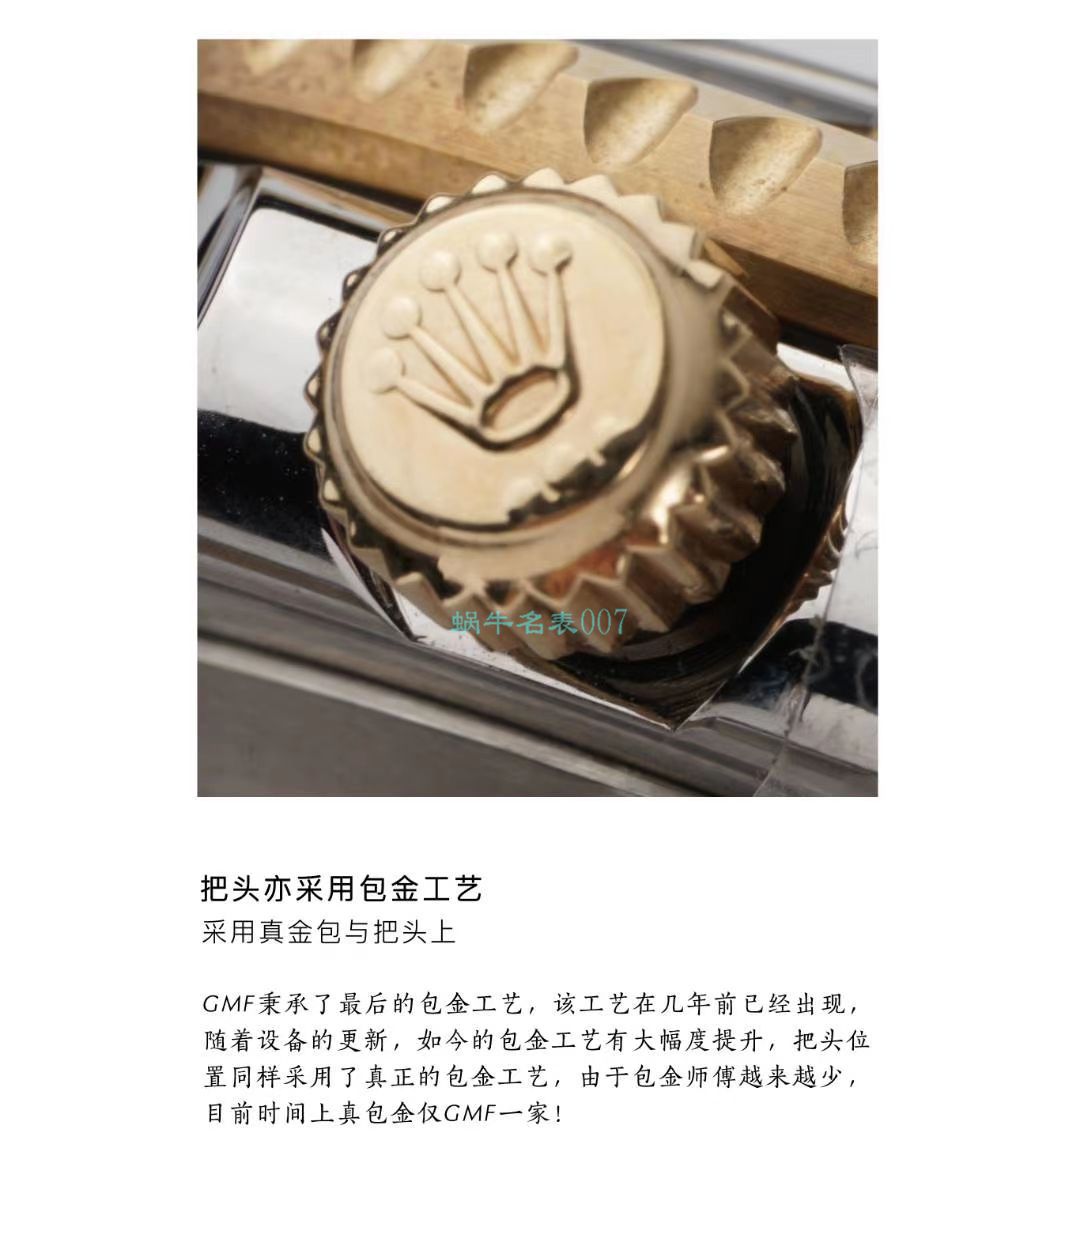 GMF包金单黄劳力士海使型系列m126603-0001腕表 